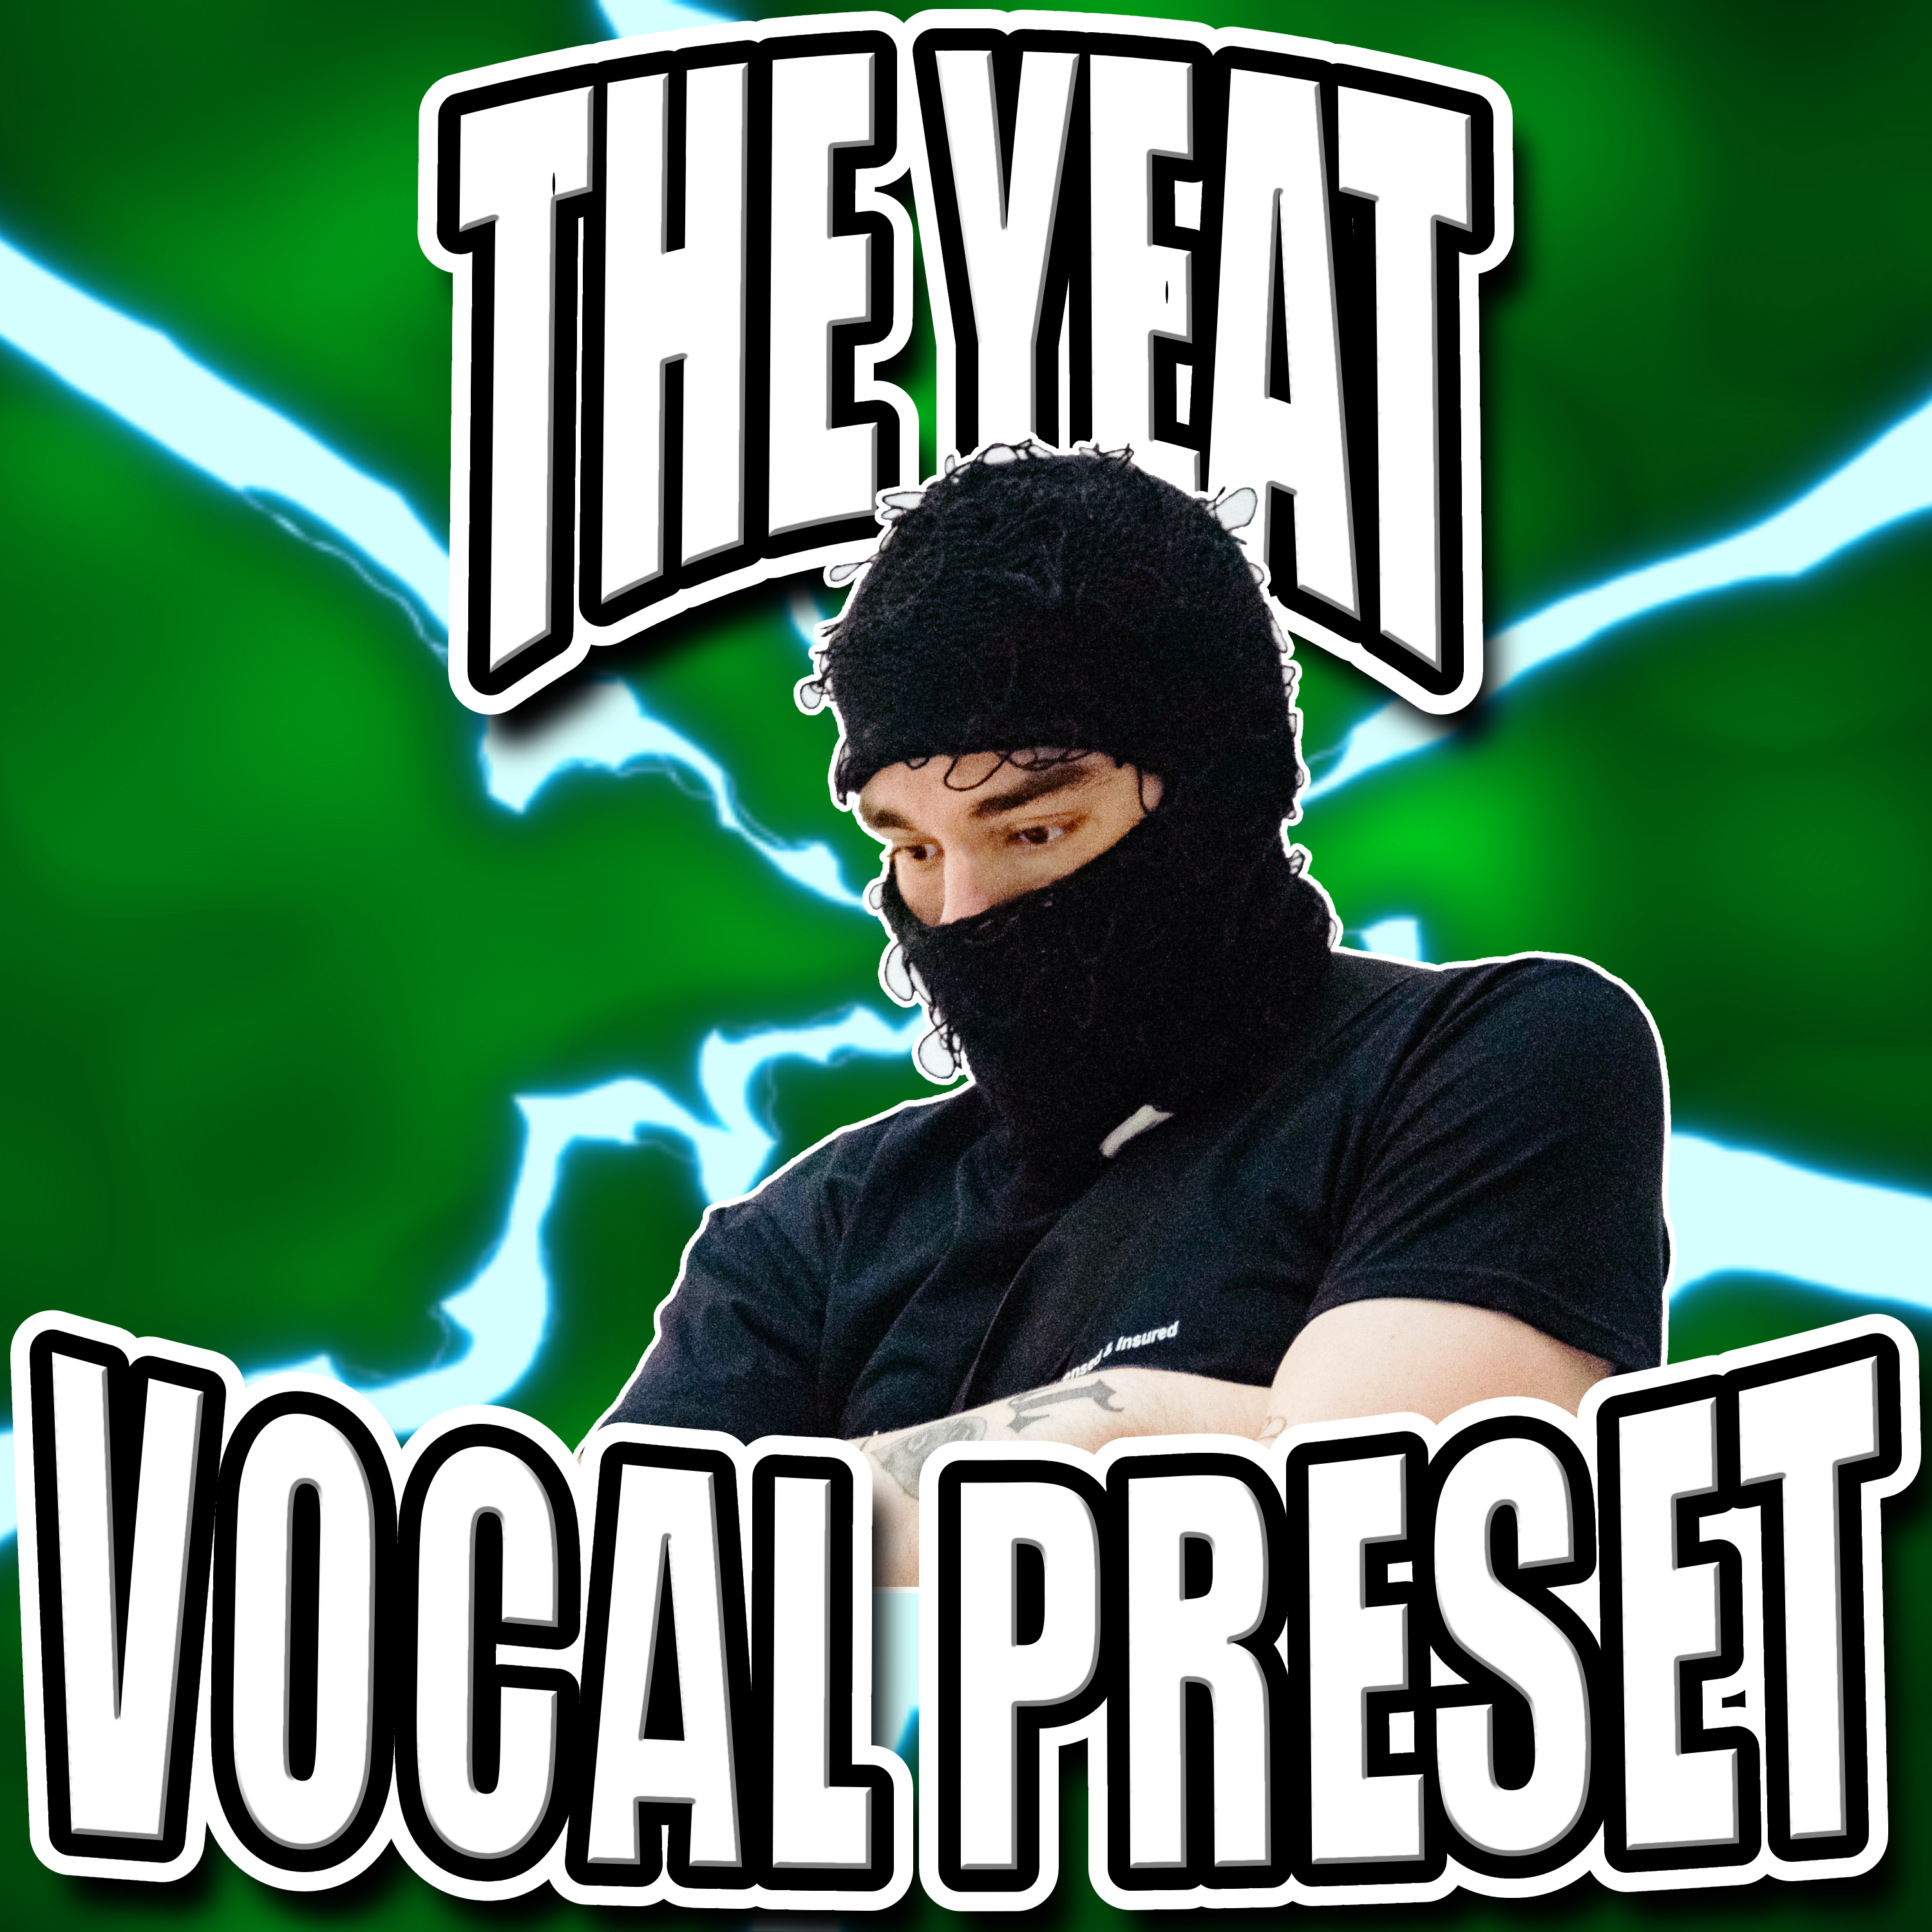 Preajuste Vocal de Yeat + PREAJUSTE REAL